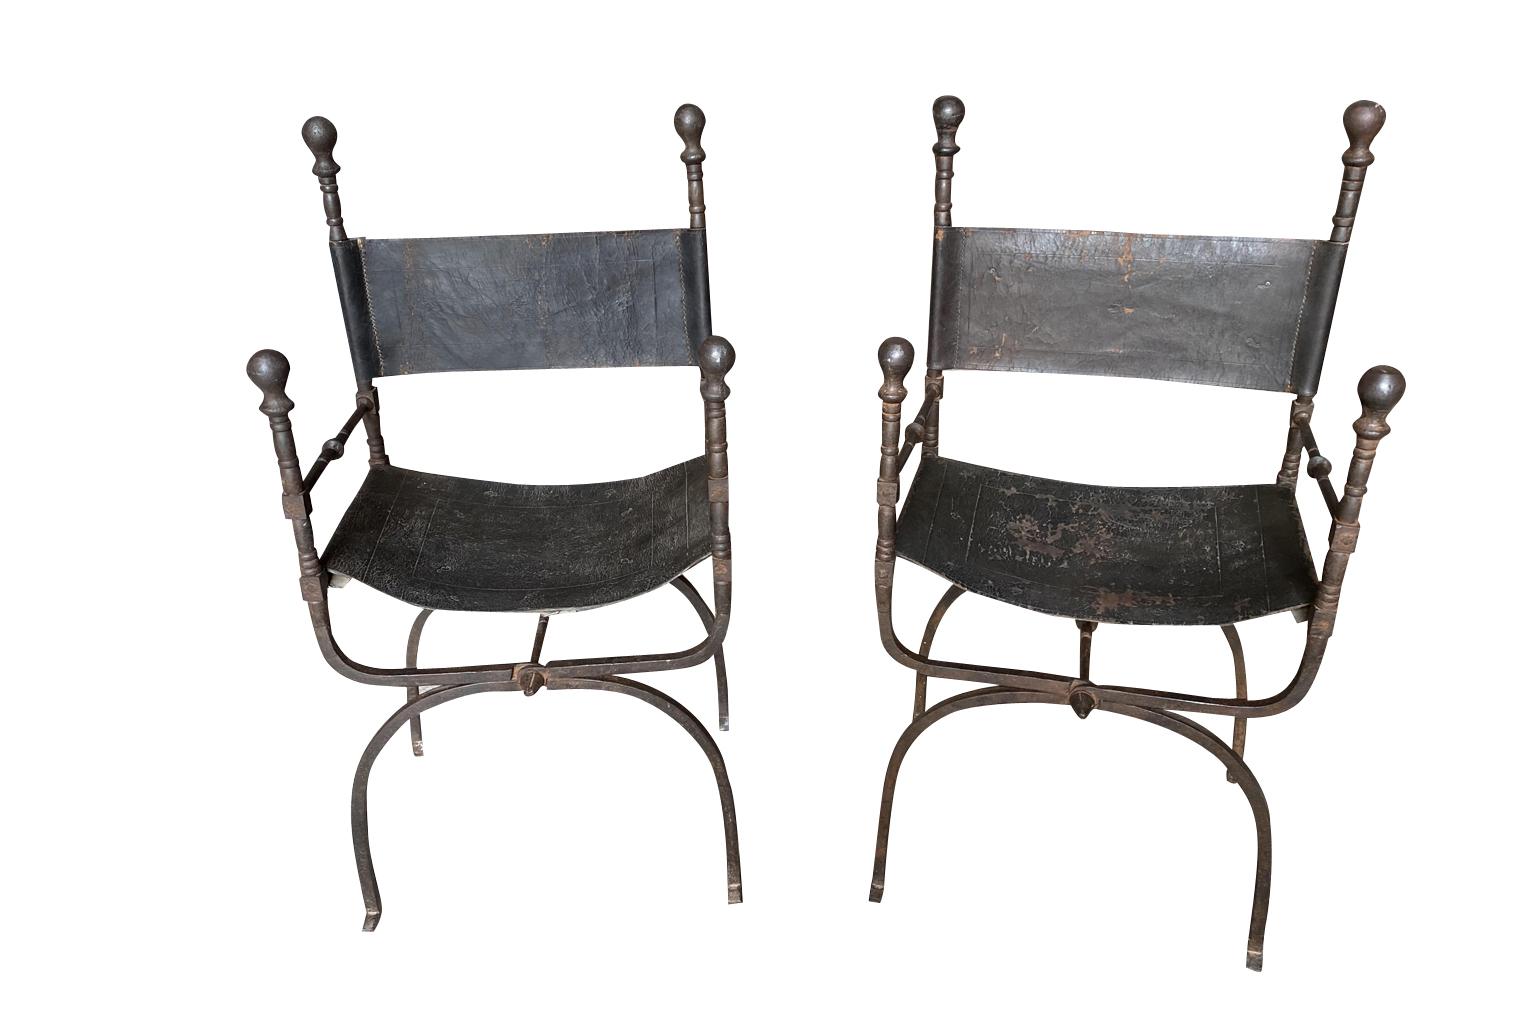 Sensationelles Paar Sessel aus dem 18. Jahrhundert aus Spanien. Wunderschön aus handgeschmiedetem Eisen und Leder gefertigt. Die Sitzhöhe beträgt 18 1/4